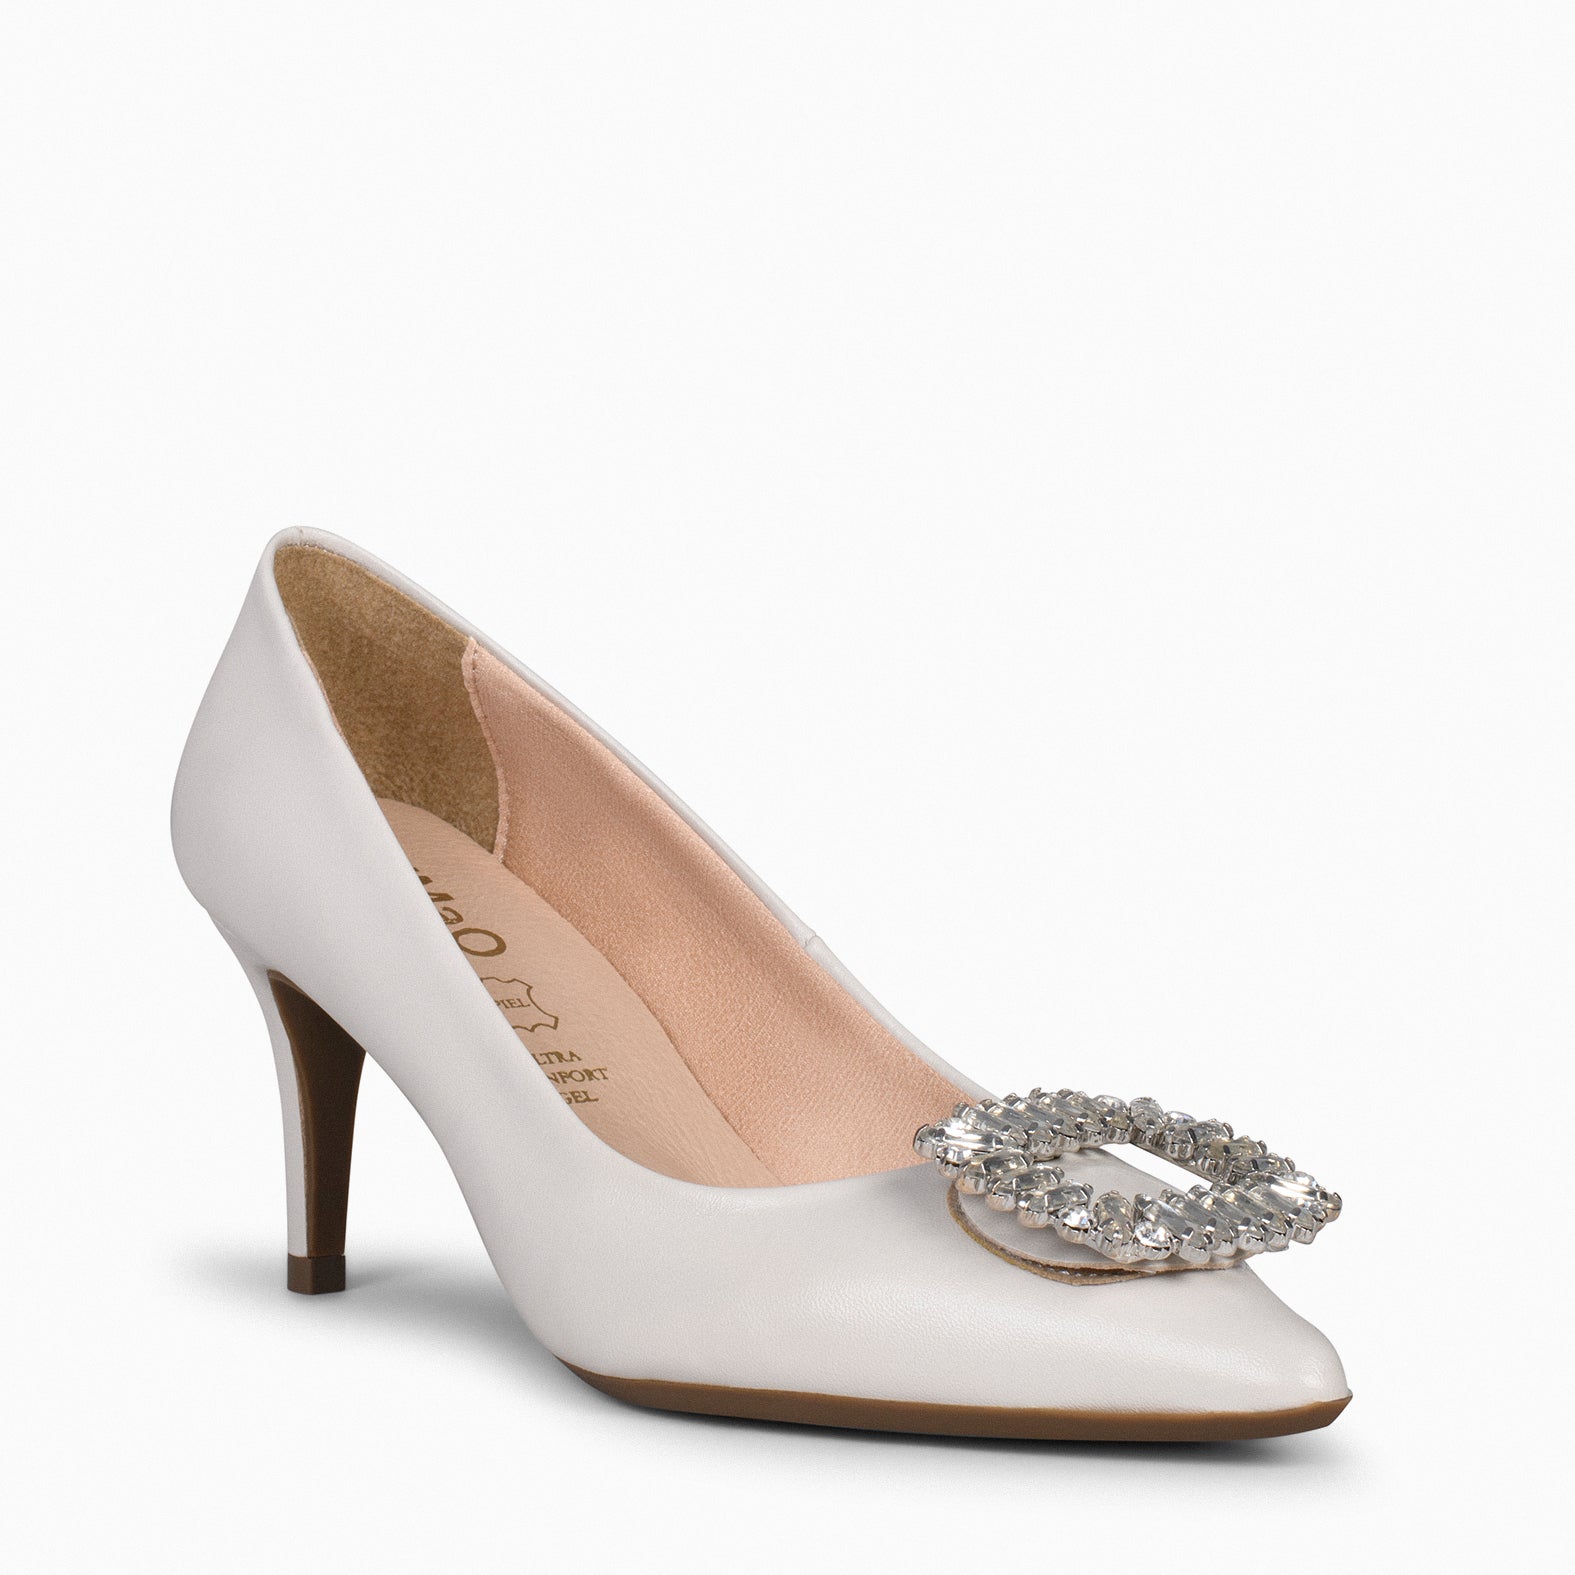 ELLA – WHITE stiletto heels with brooch